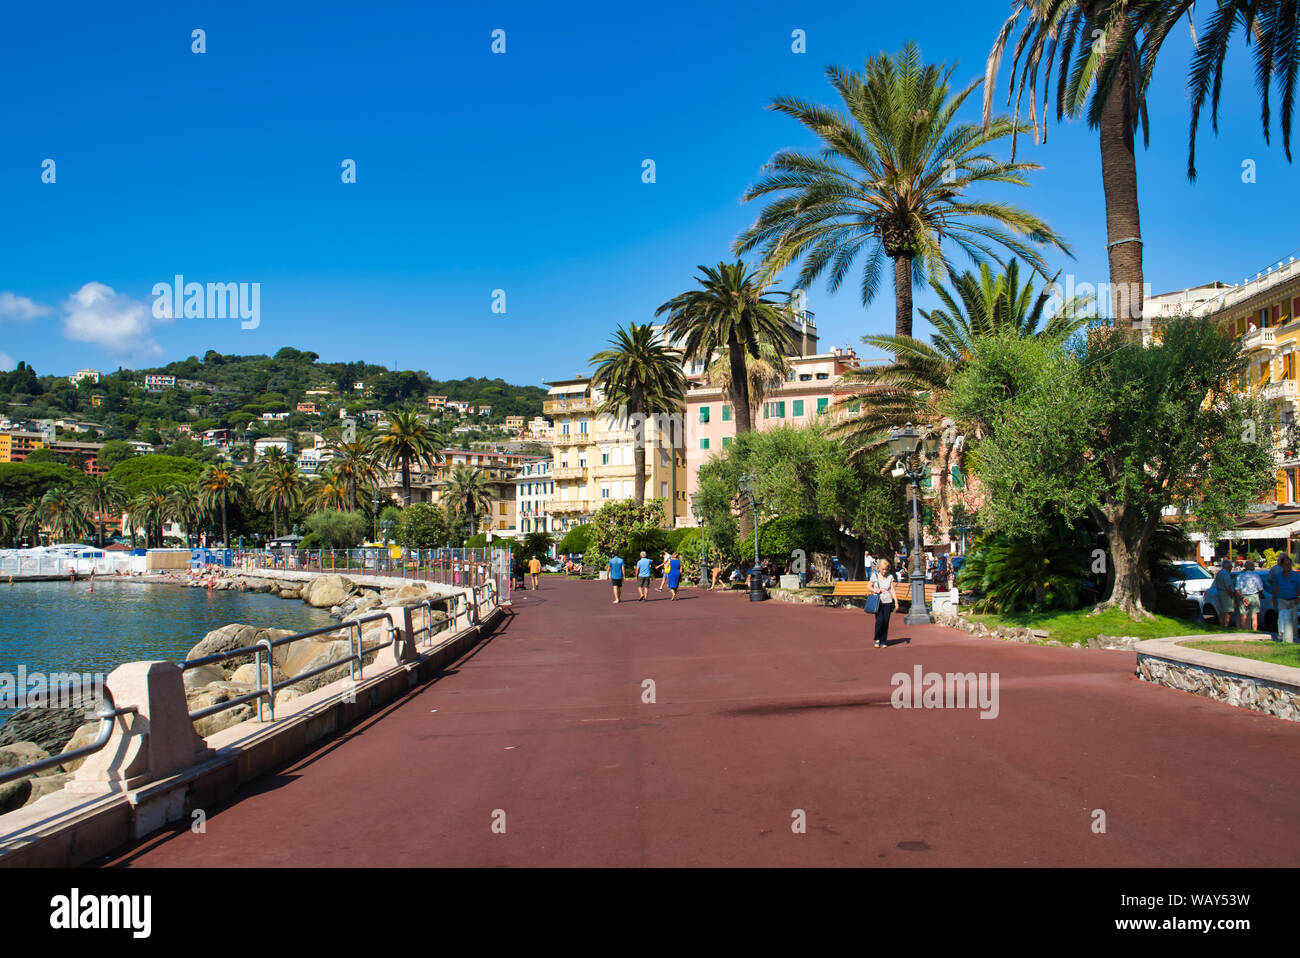 RAPALLO, LIGURIA, Italia - 16 agosto 2019: una meravigliosa vista della passeggiata nella città di Rapallo. Lungomare Vittorio Veneto. Bella cittadina Foto Stock